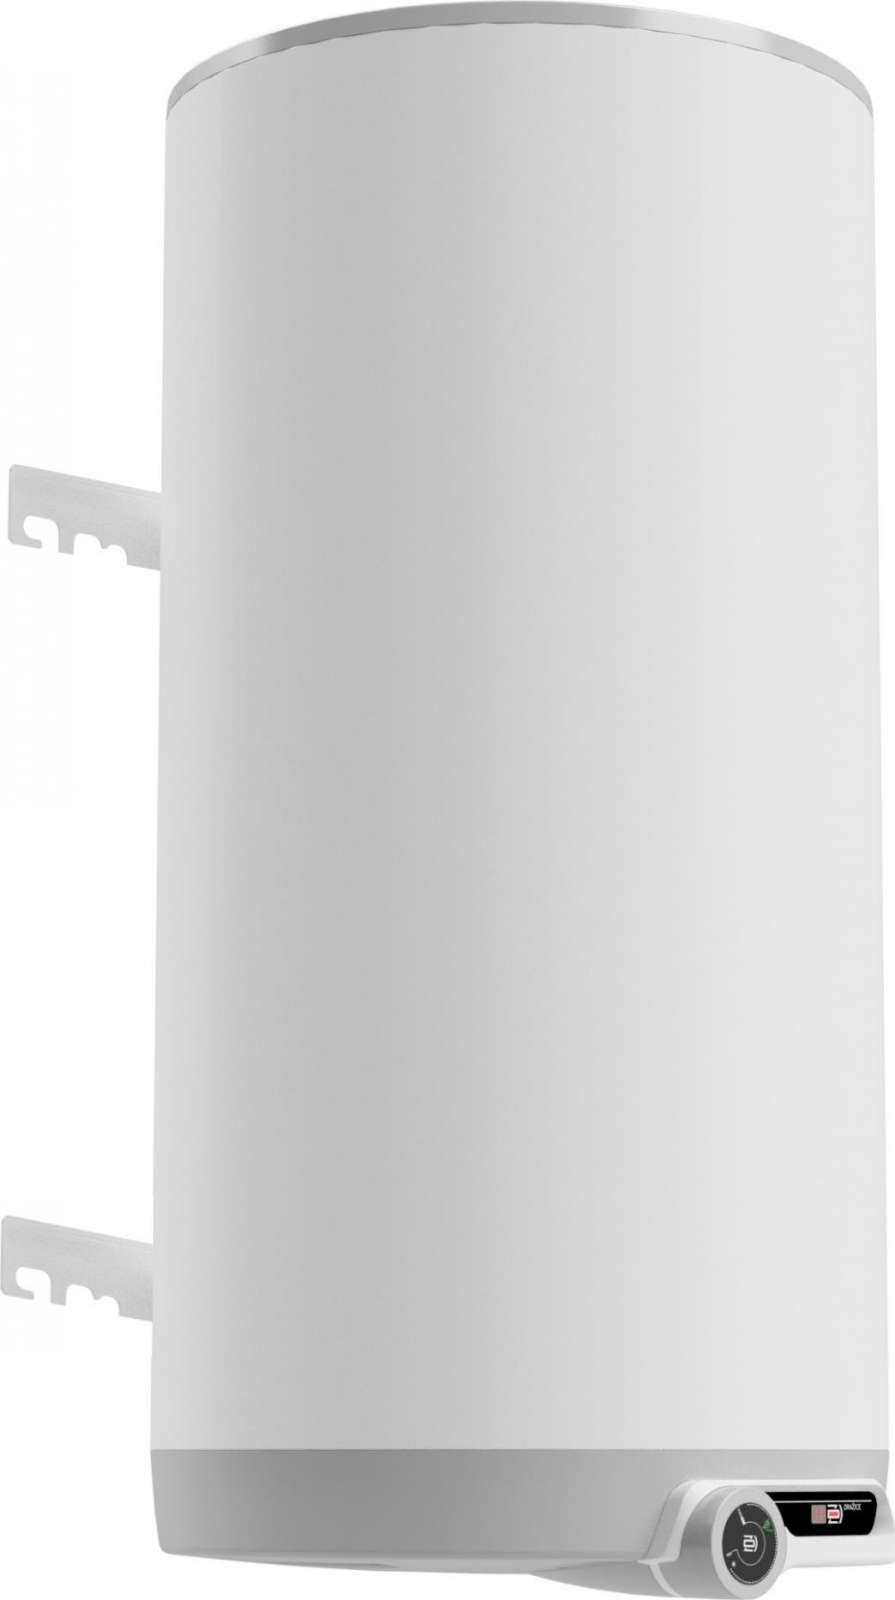 Svislý elektrický ohřívač vody Dražice OKCE/E 200, 2,2 kW, 199 l,1300 x 584 mm DRAŽICE / NIBE spotřebiče